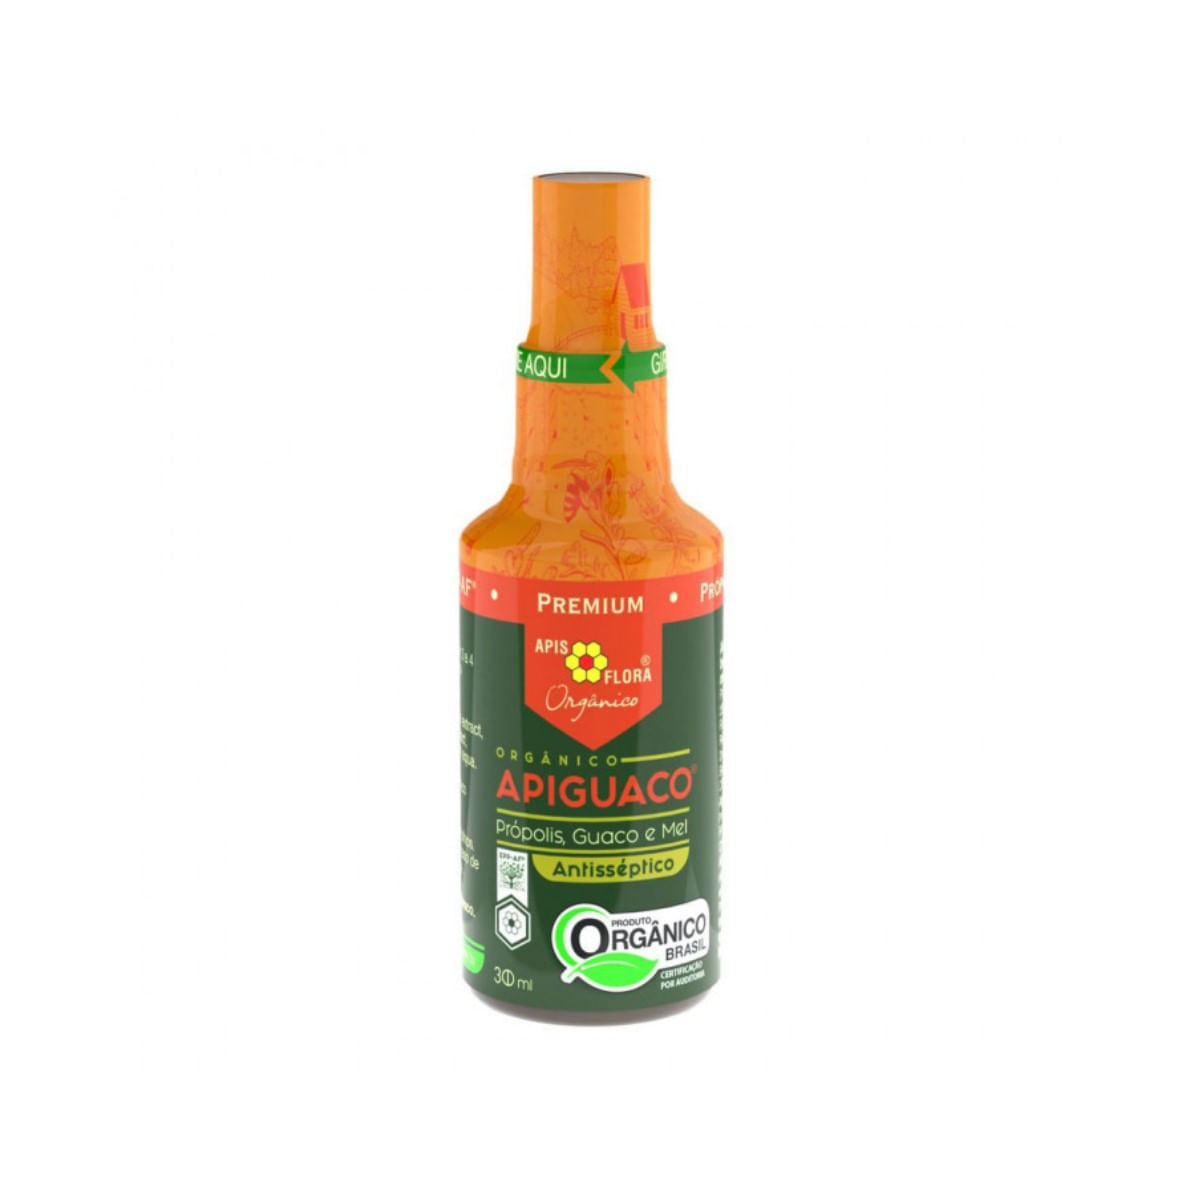 apiguaco-organico-spray-30ml-1.jpg